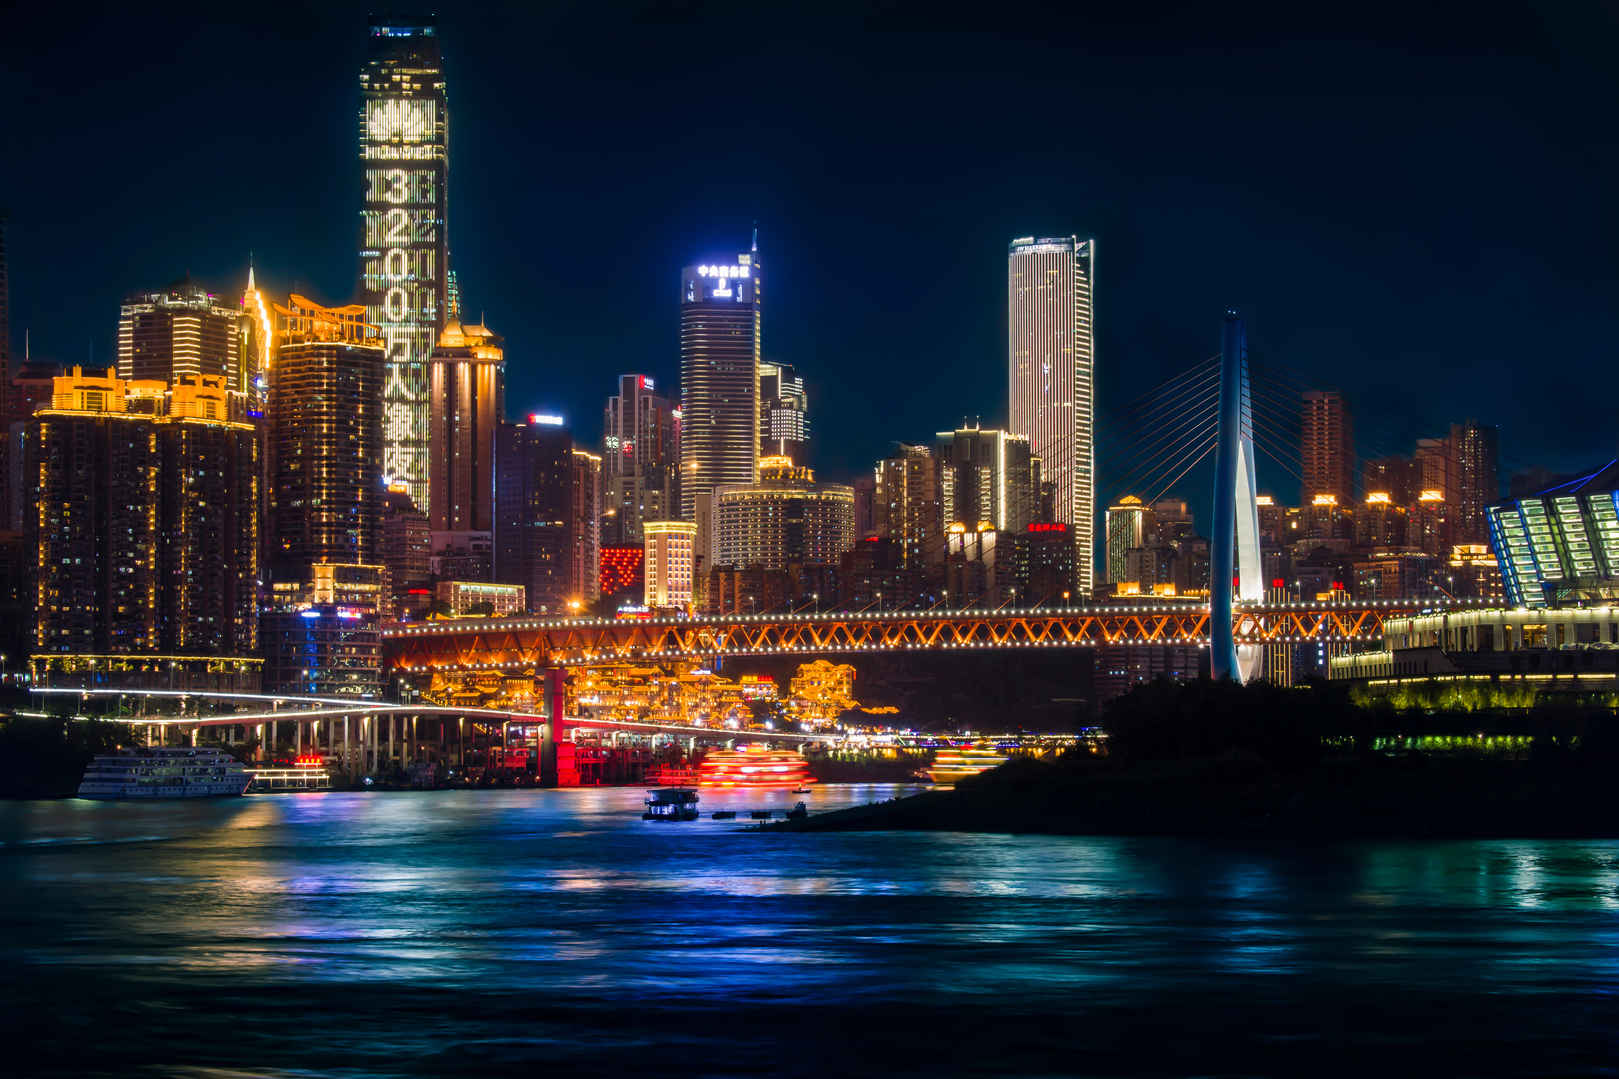 重庆市南滨路风景区 南滨之夜4k风景壁纸